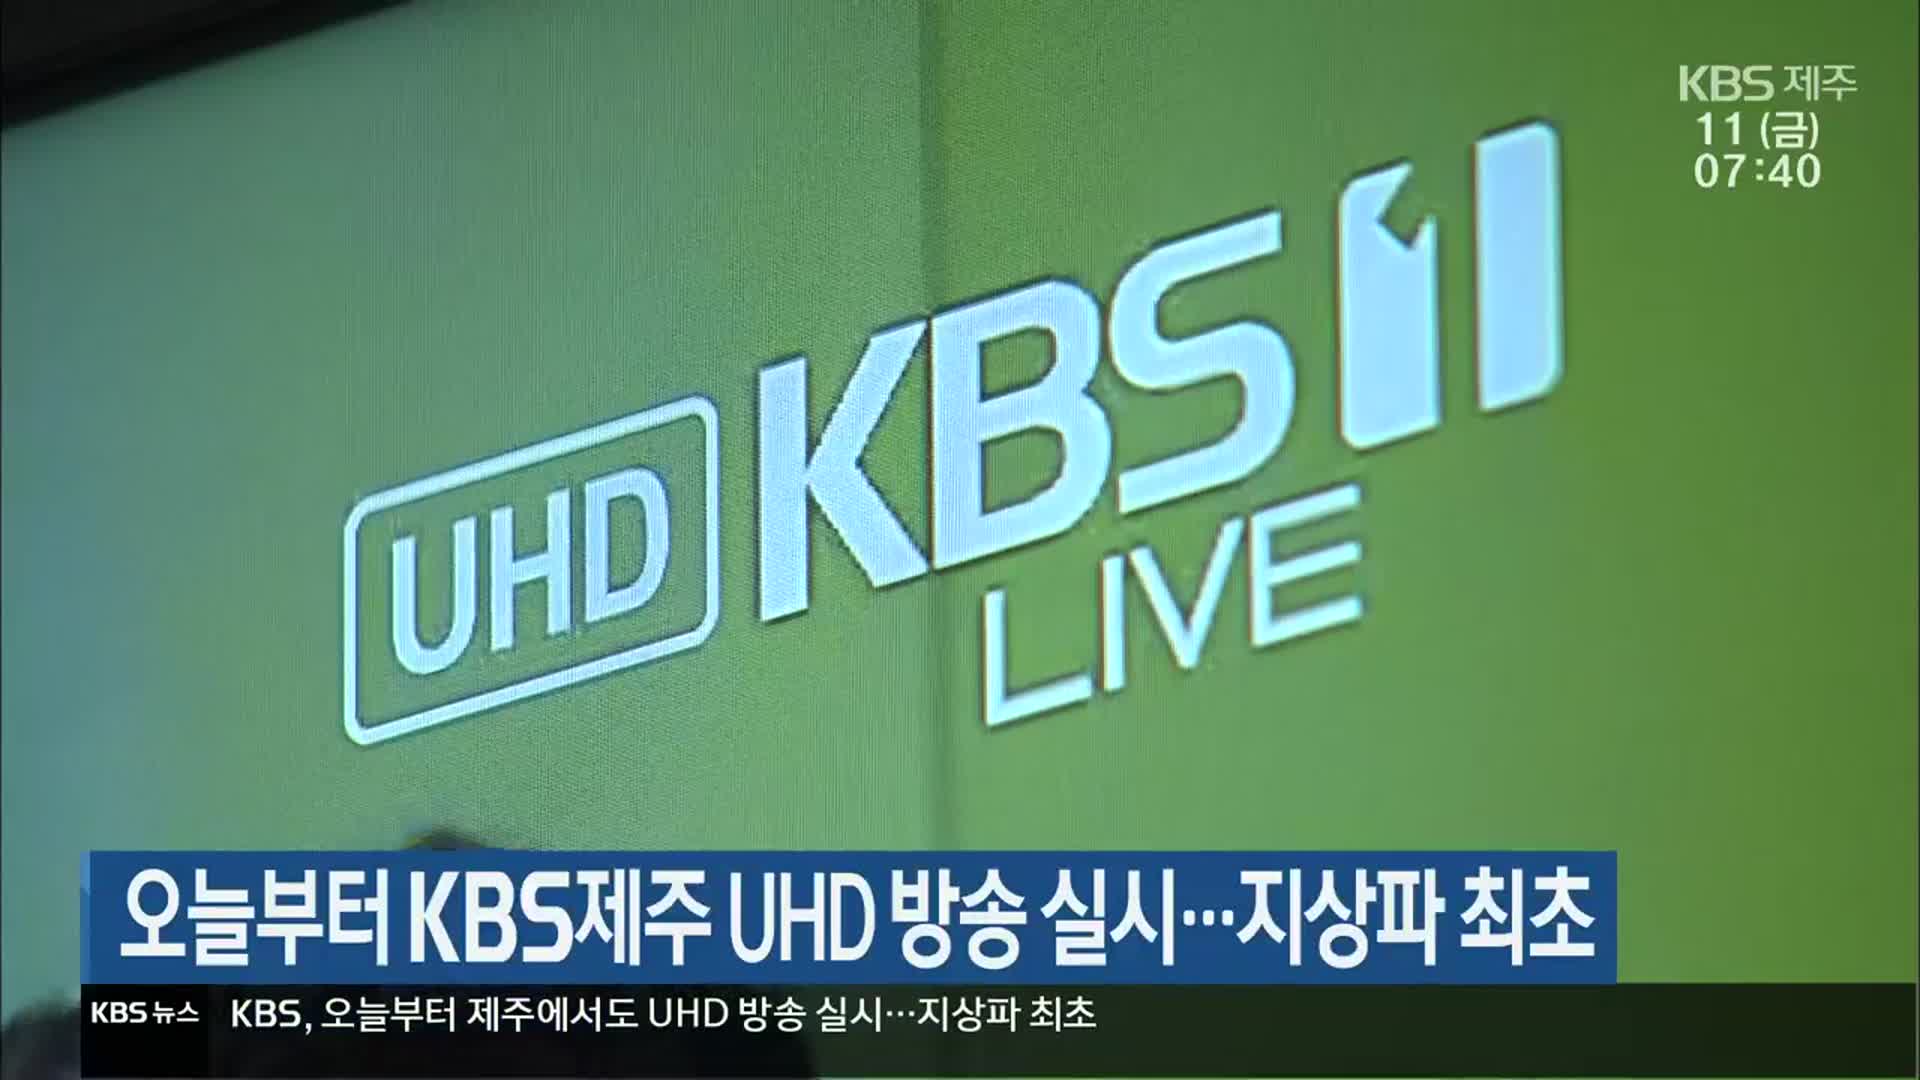 오늘부터 KBS제주 UHD 방송 실시…지상파 최초